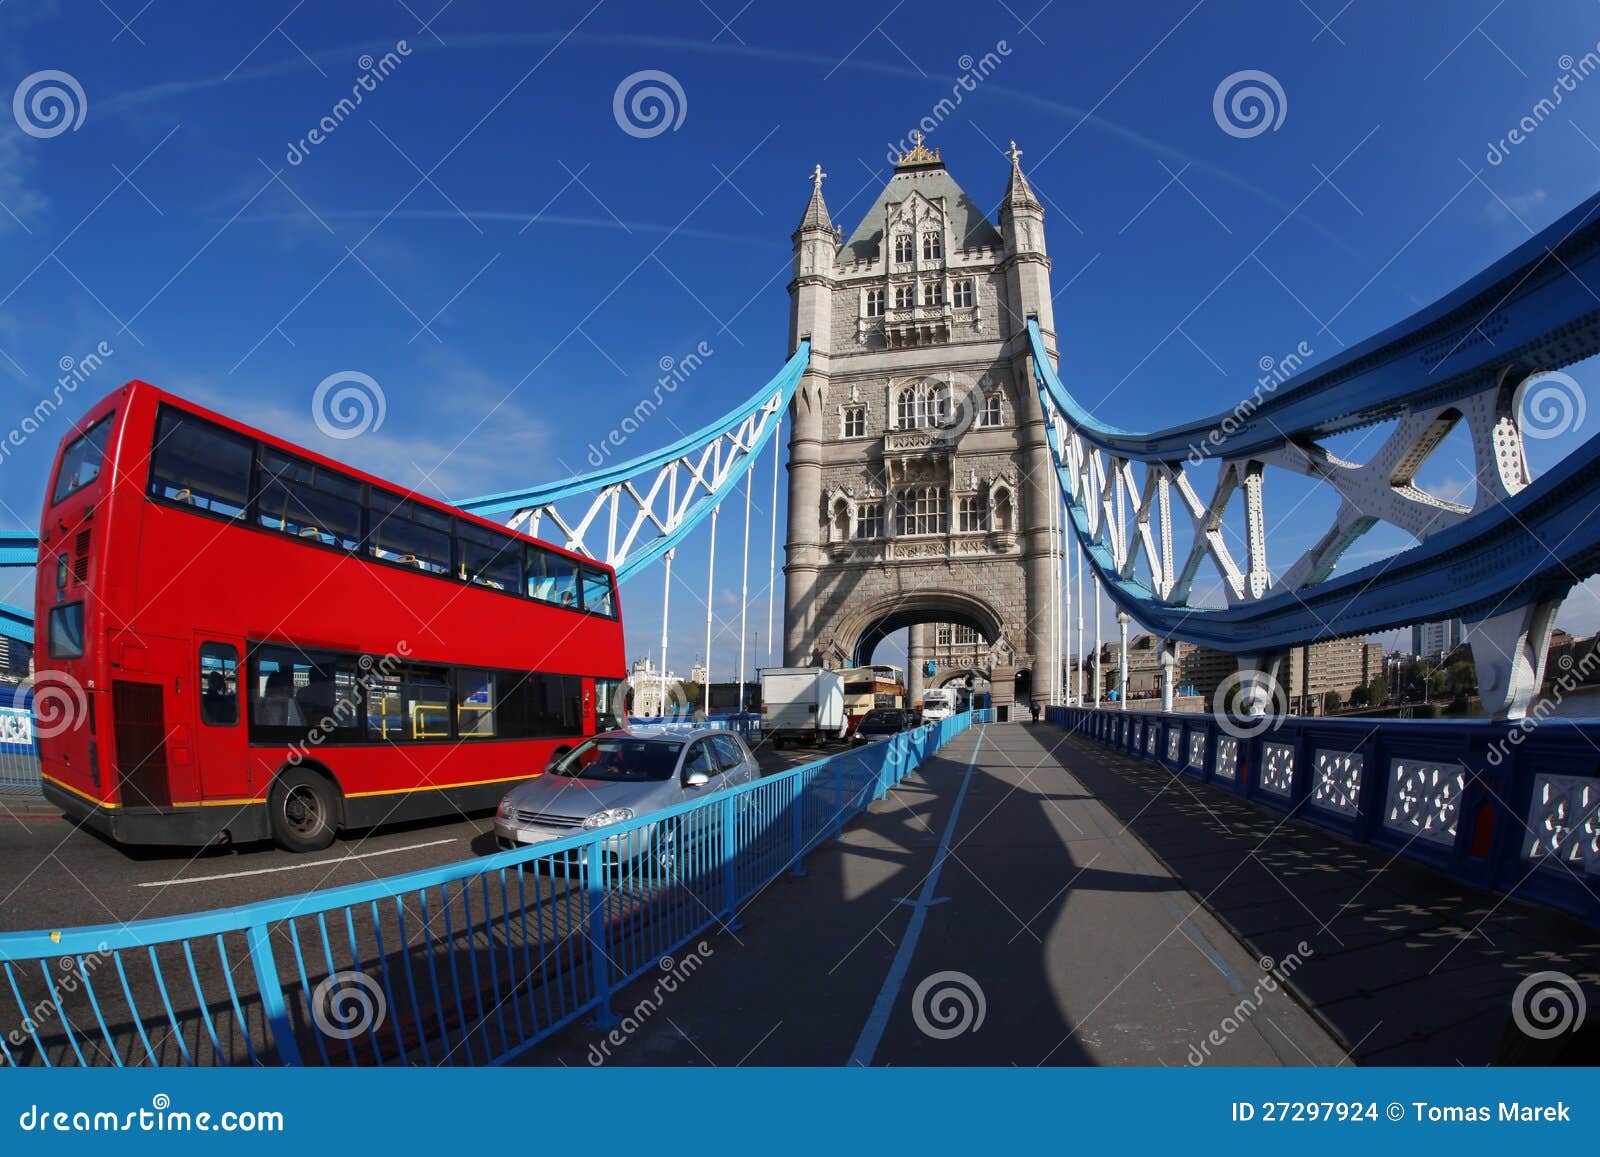 Ponticello famoso della torretta a Londra, Inghilterra. Ponticello famoso della torretta a Londra con il bus rosso della città, Inghilterra